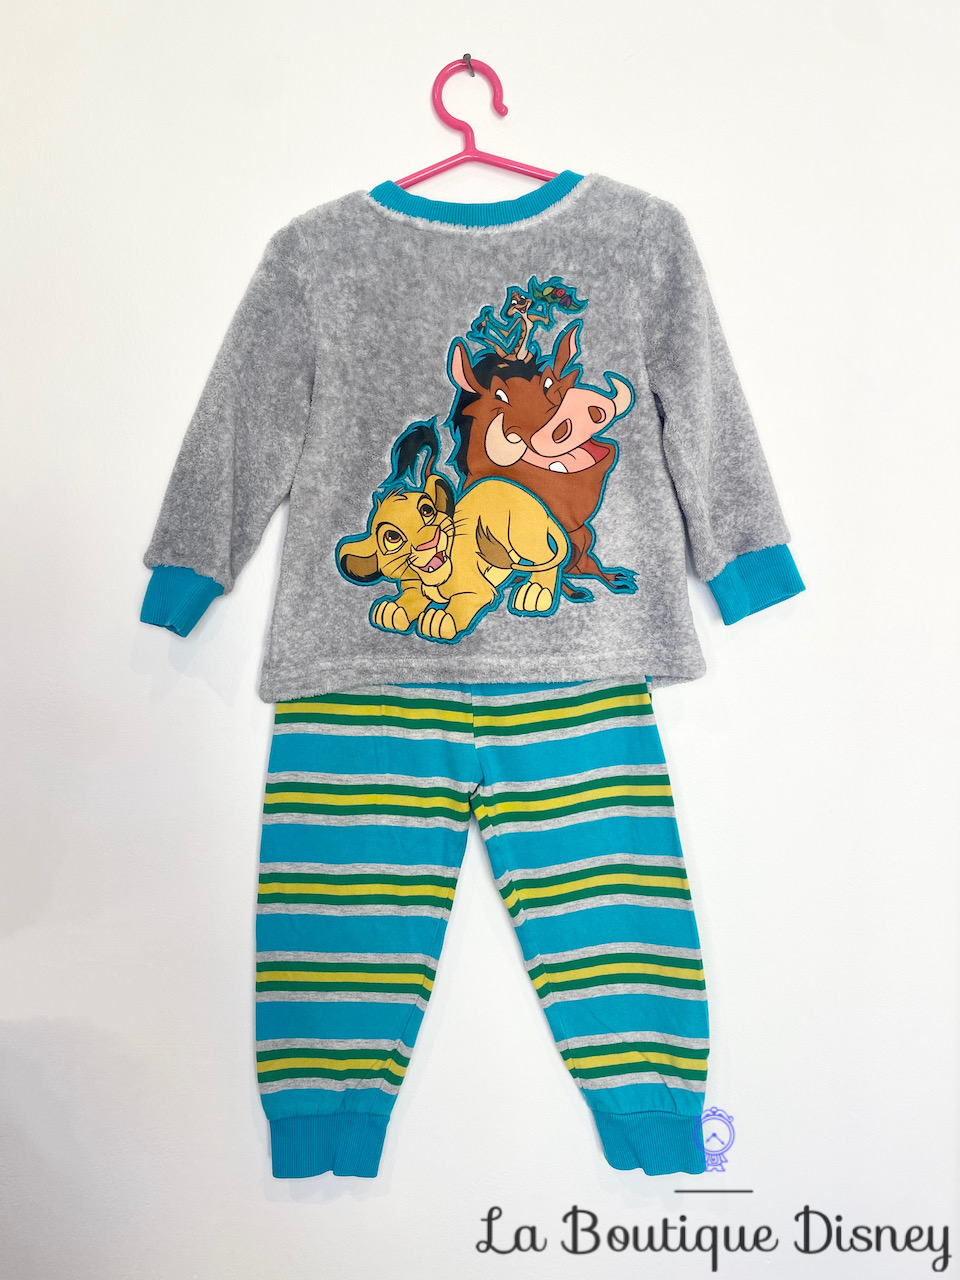 Pyjama polaire Simba Timon Pumbaa Le roi lion Disney Store taille 2 ans gris bleu rayures